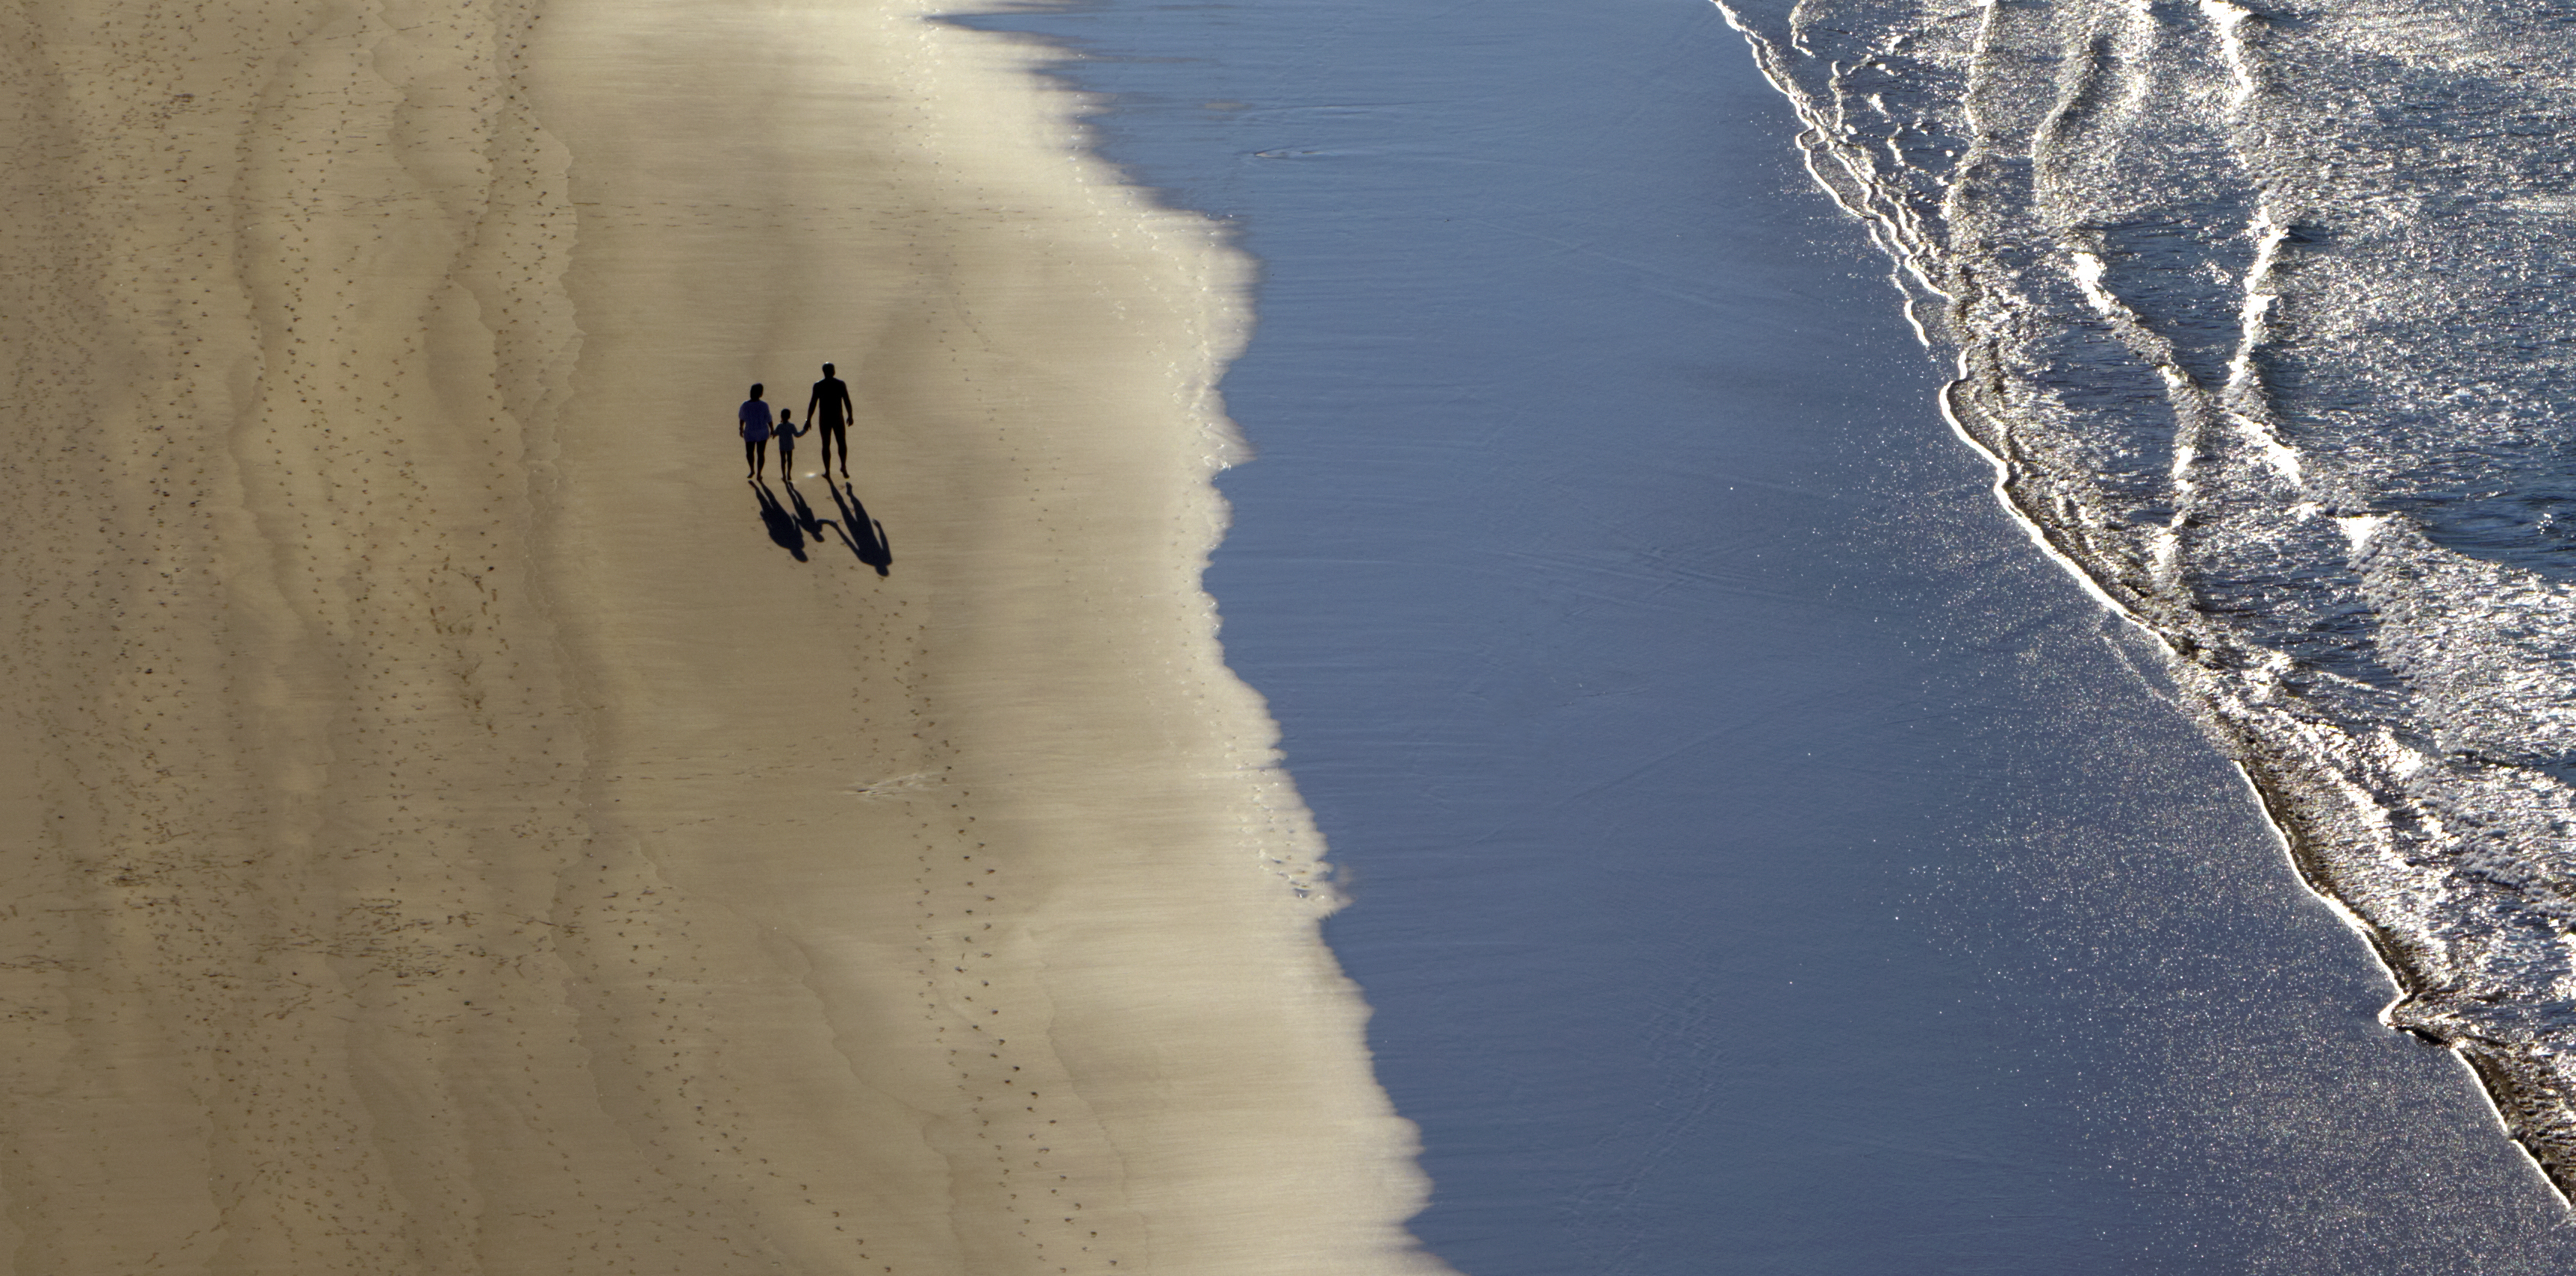 Las 15 mejores playas nudistas de España Skyscanner Espana imagen